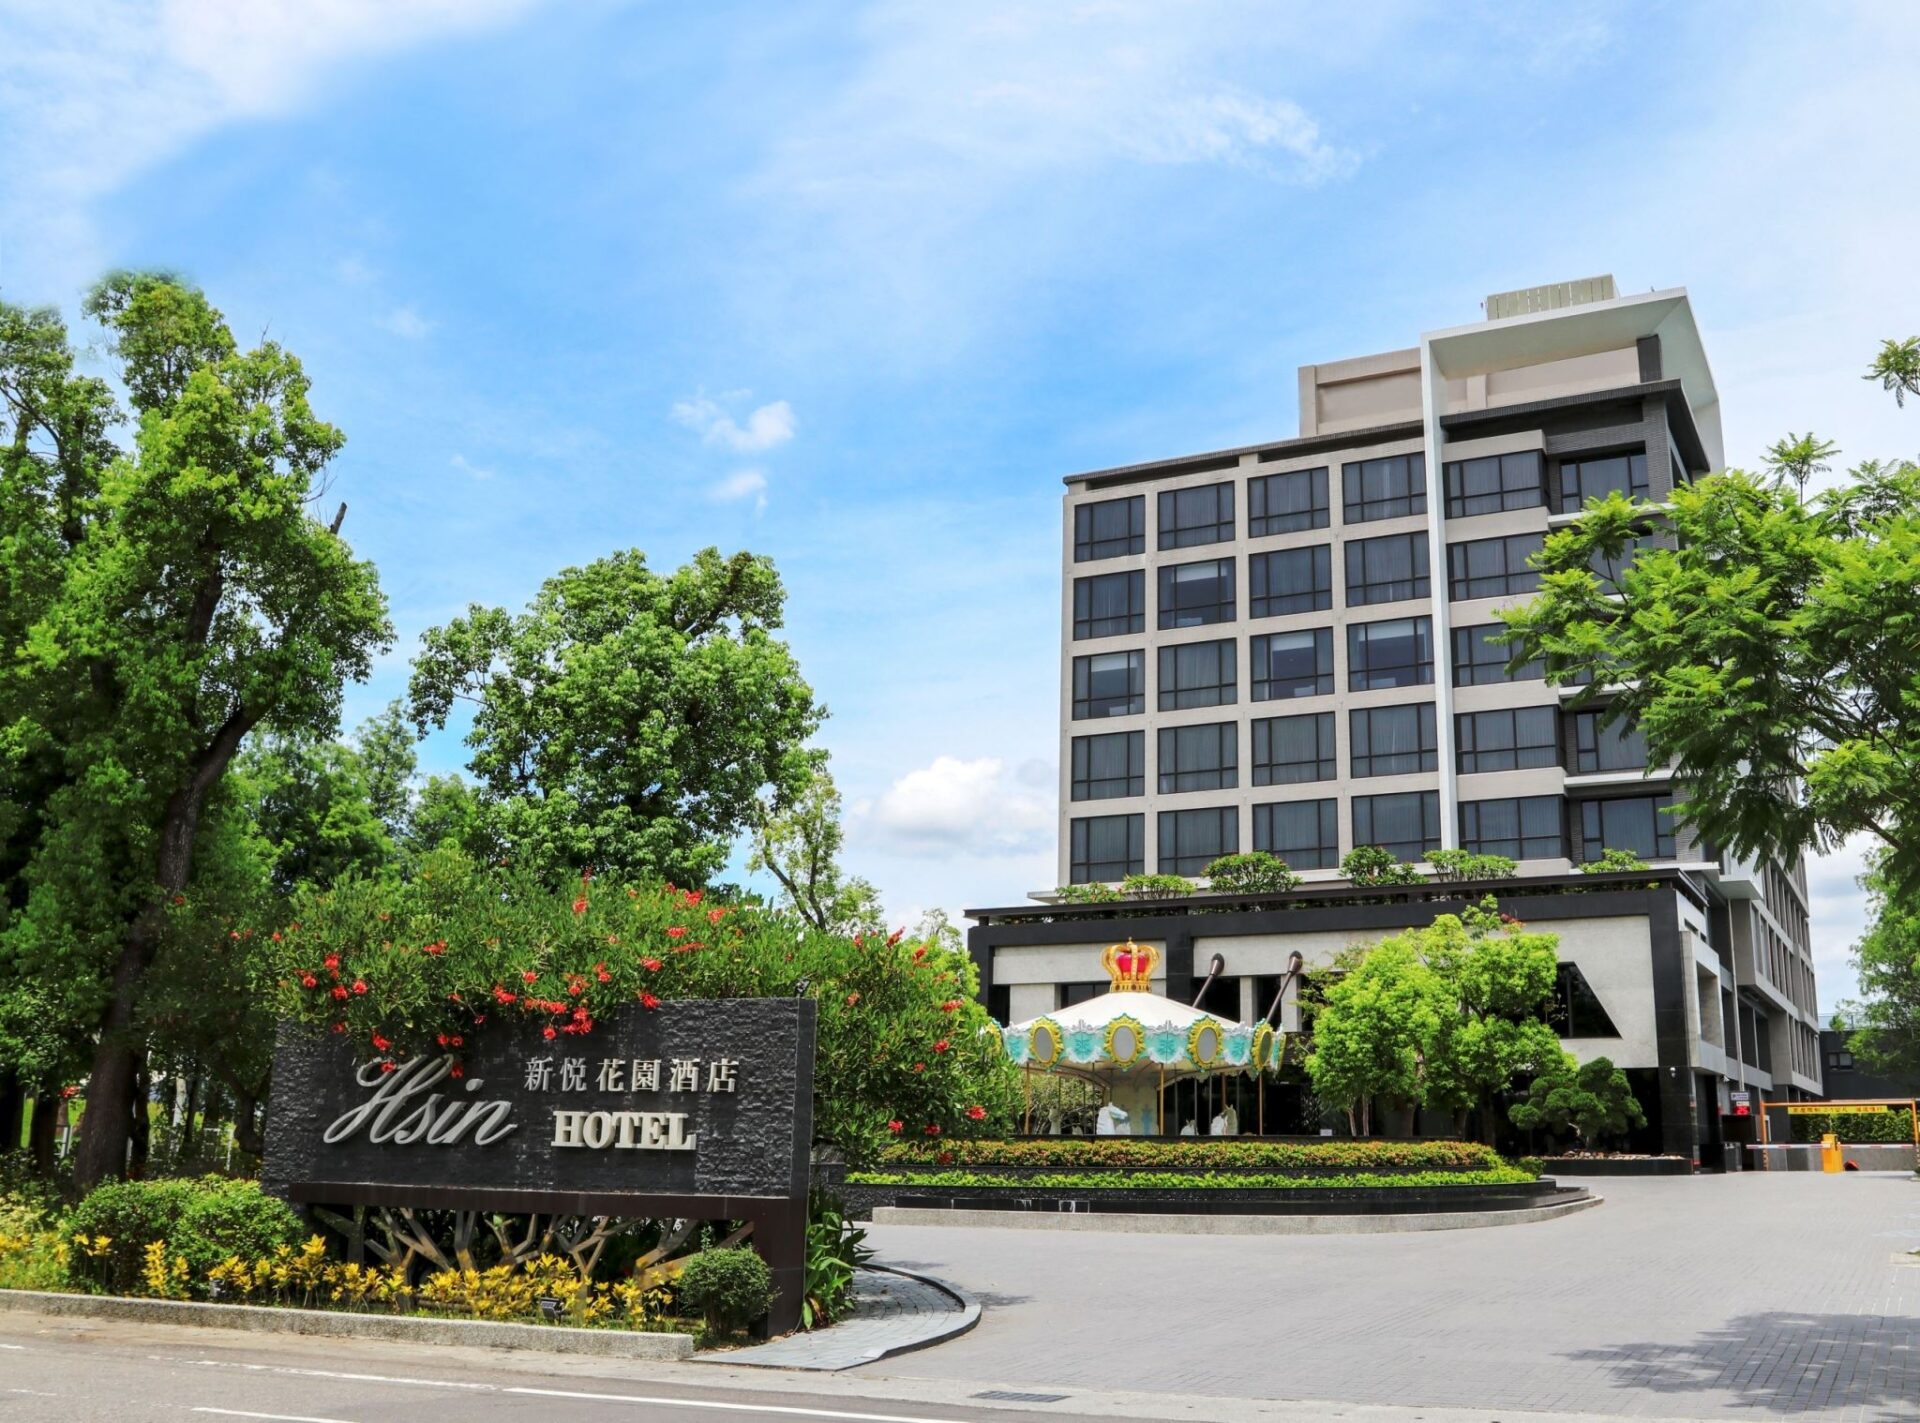 嘉義市環保標章旅館再+1　新悦花園酒店榮獲金級認證